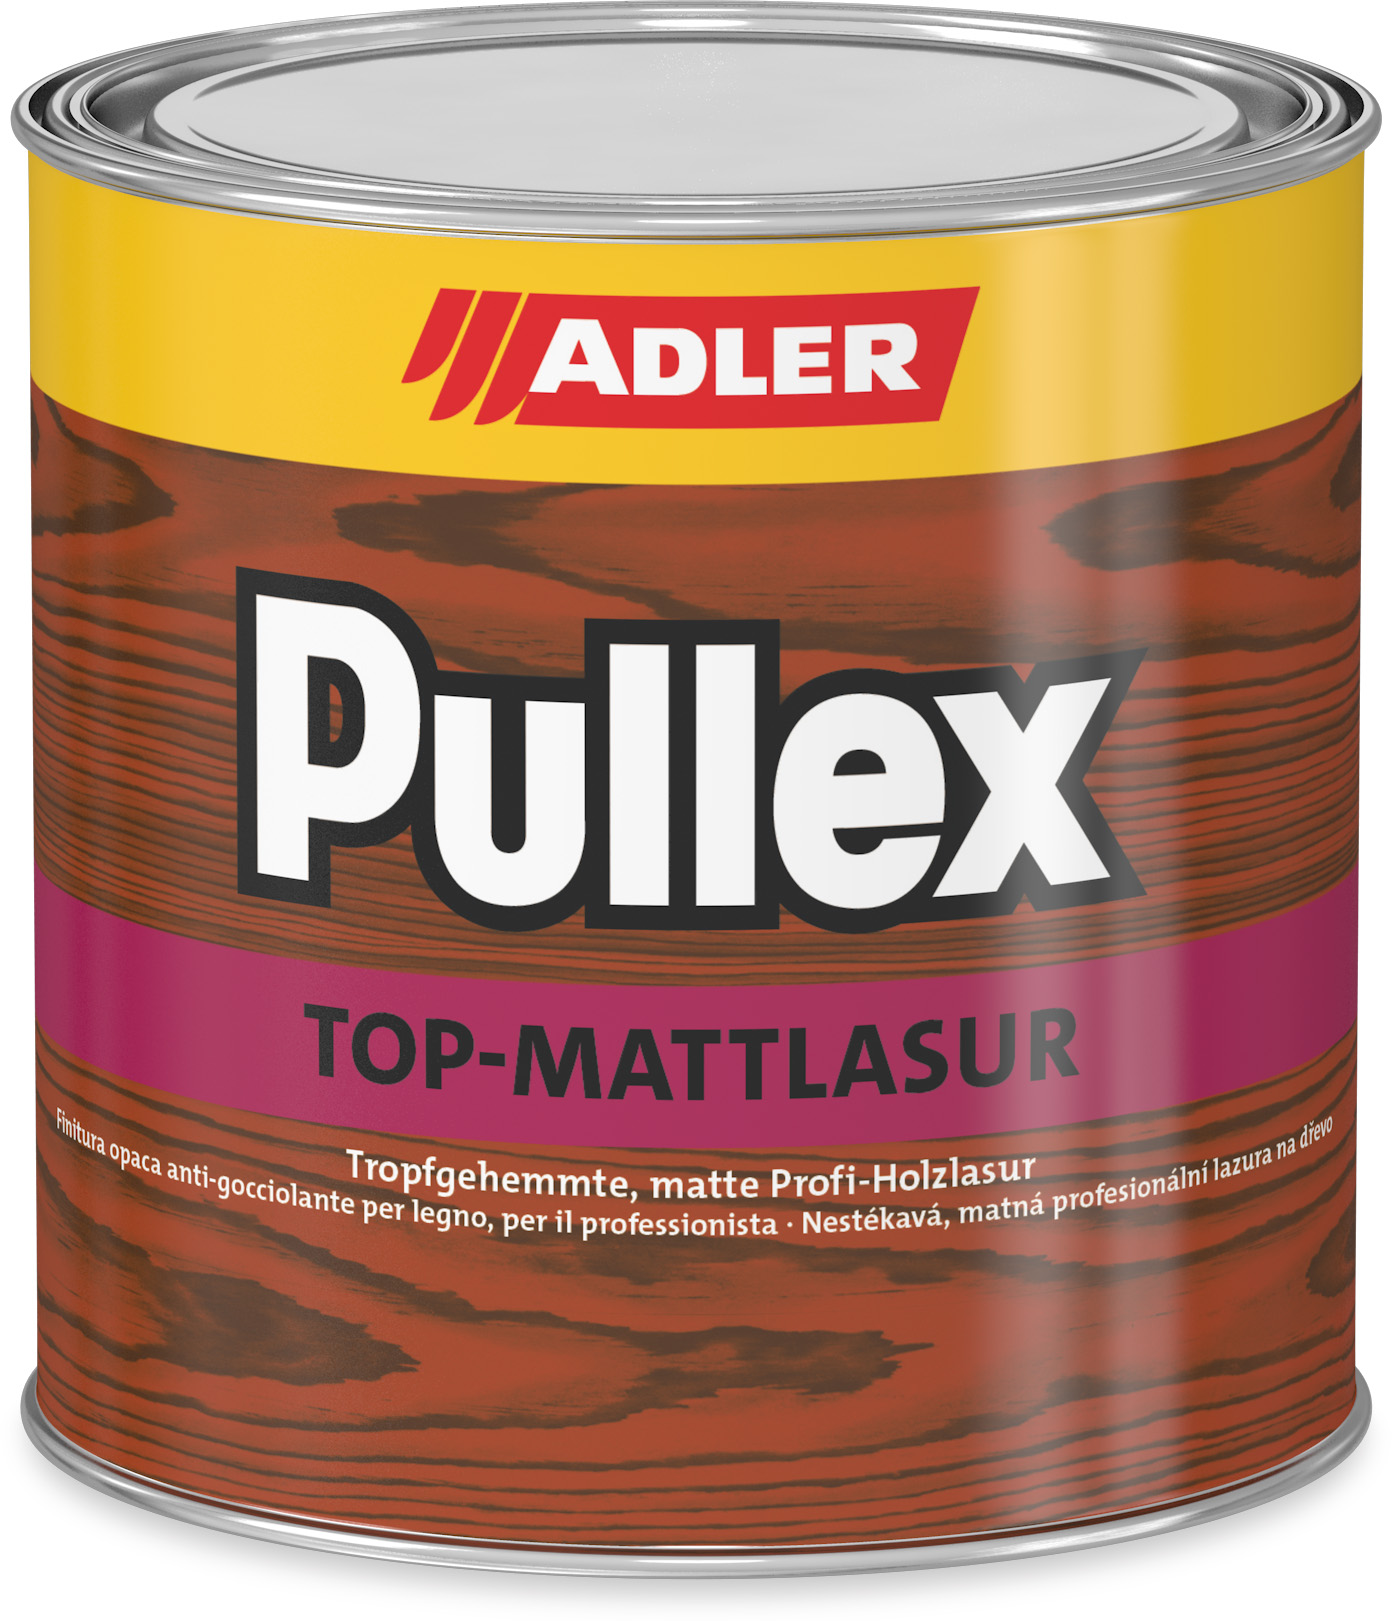 ADLER PULLEX TOP-MATT LASUR - Nestekavá tenkovrstvá lazúra 2,5 l top lasur - vŕba